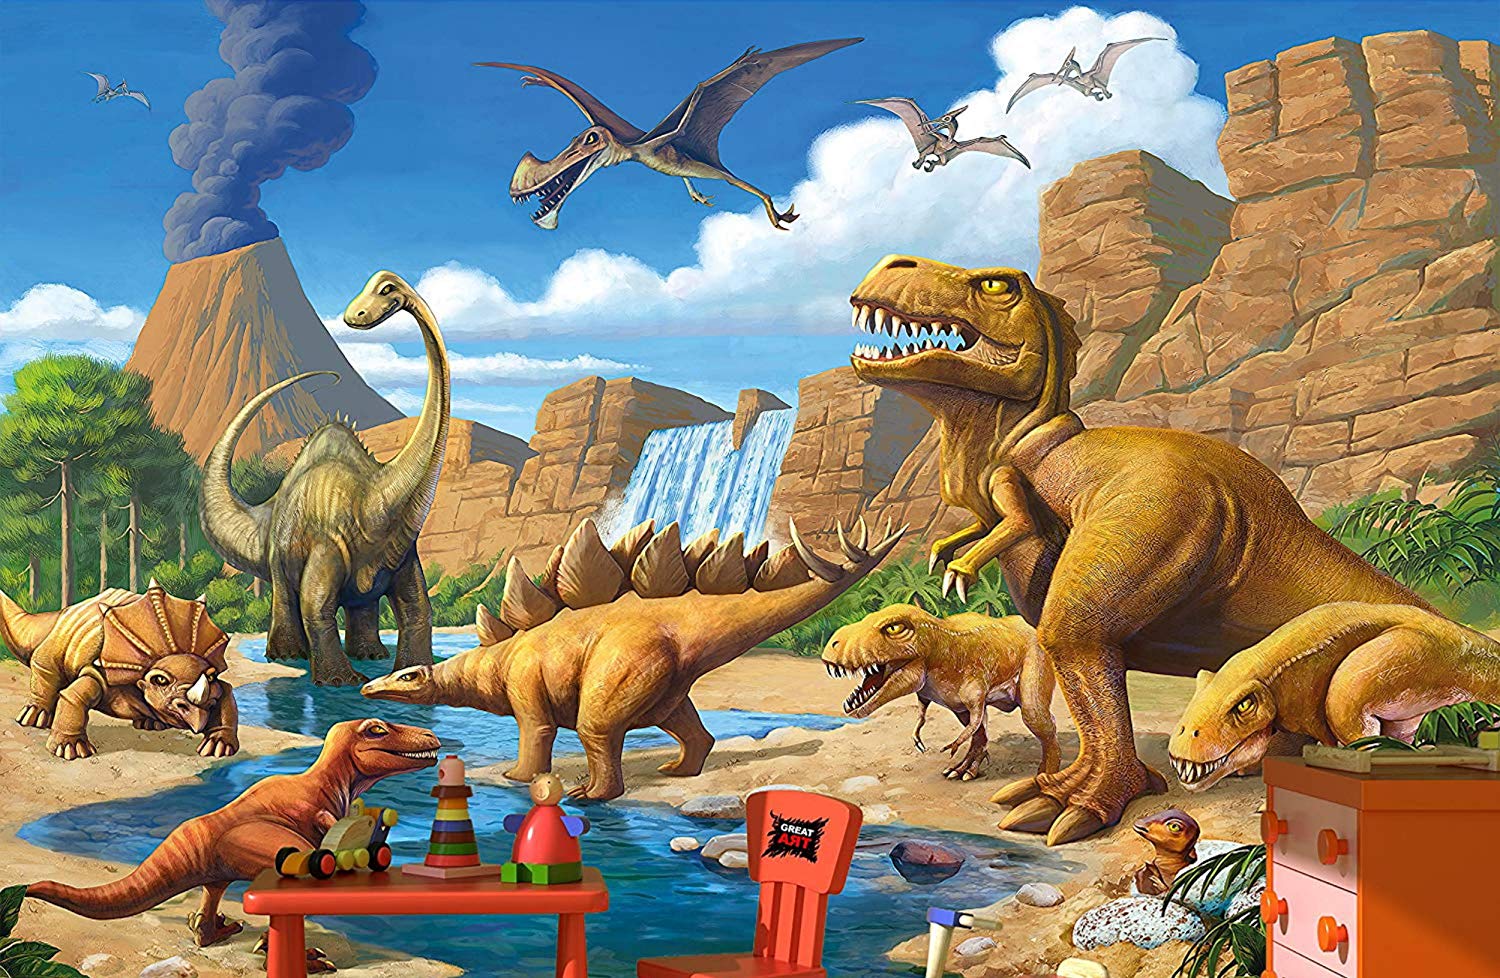 GREAT ART Papel pintado Habitación para niños Aventura Dinosaurio - Decoración de la imagen de la pared Dino World Comic Style Jungle póster de papel (132,3 pulgadas x 93,7)